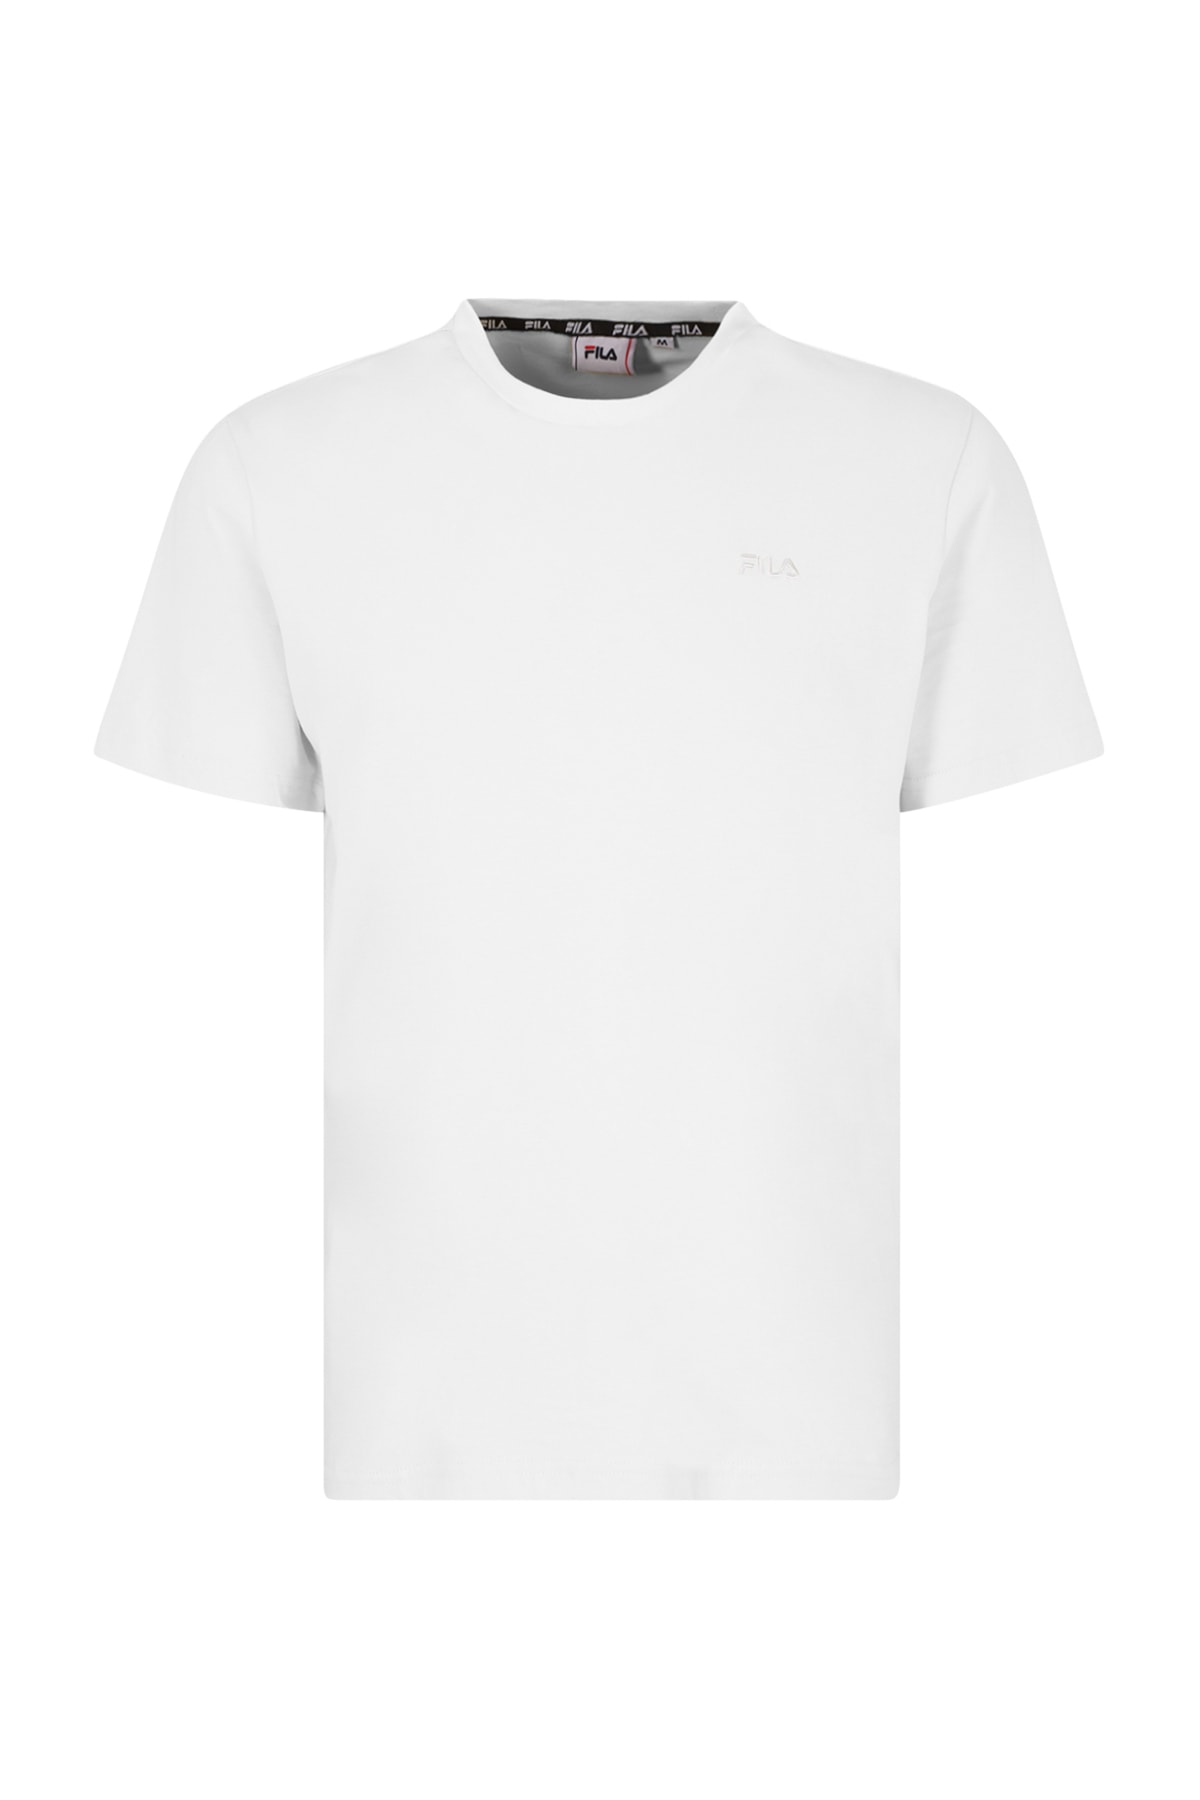 Ярко-белая футболка для женщин/девочек Fila, белый футболка для девочек fila розовый